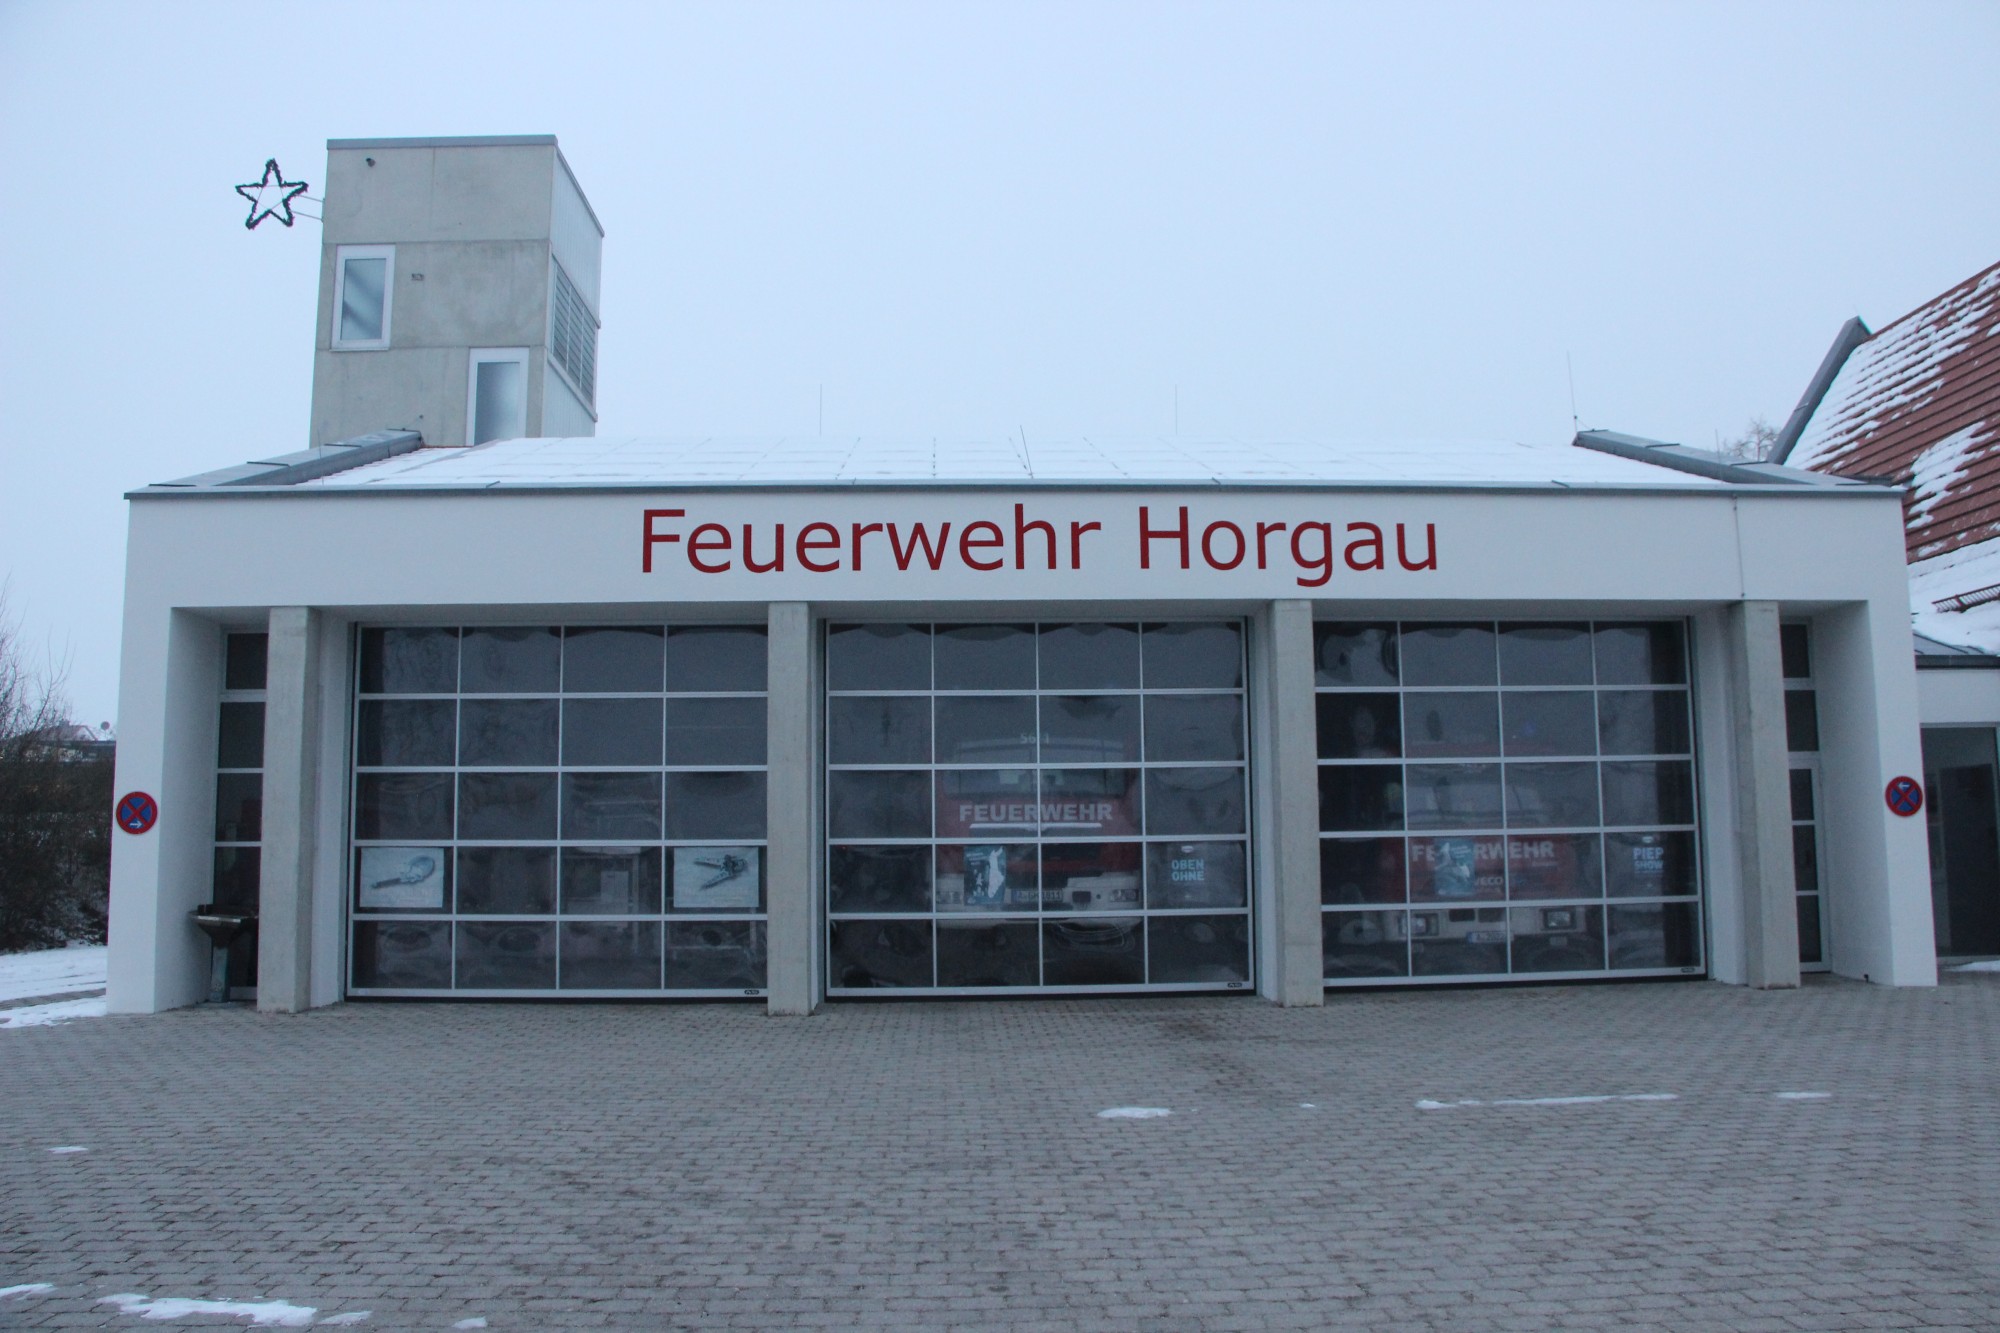 Feuerwehr Horgau